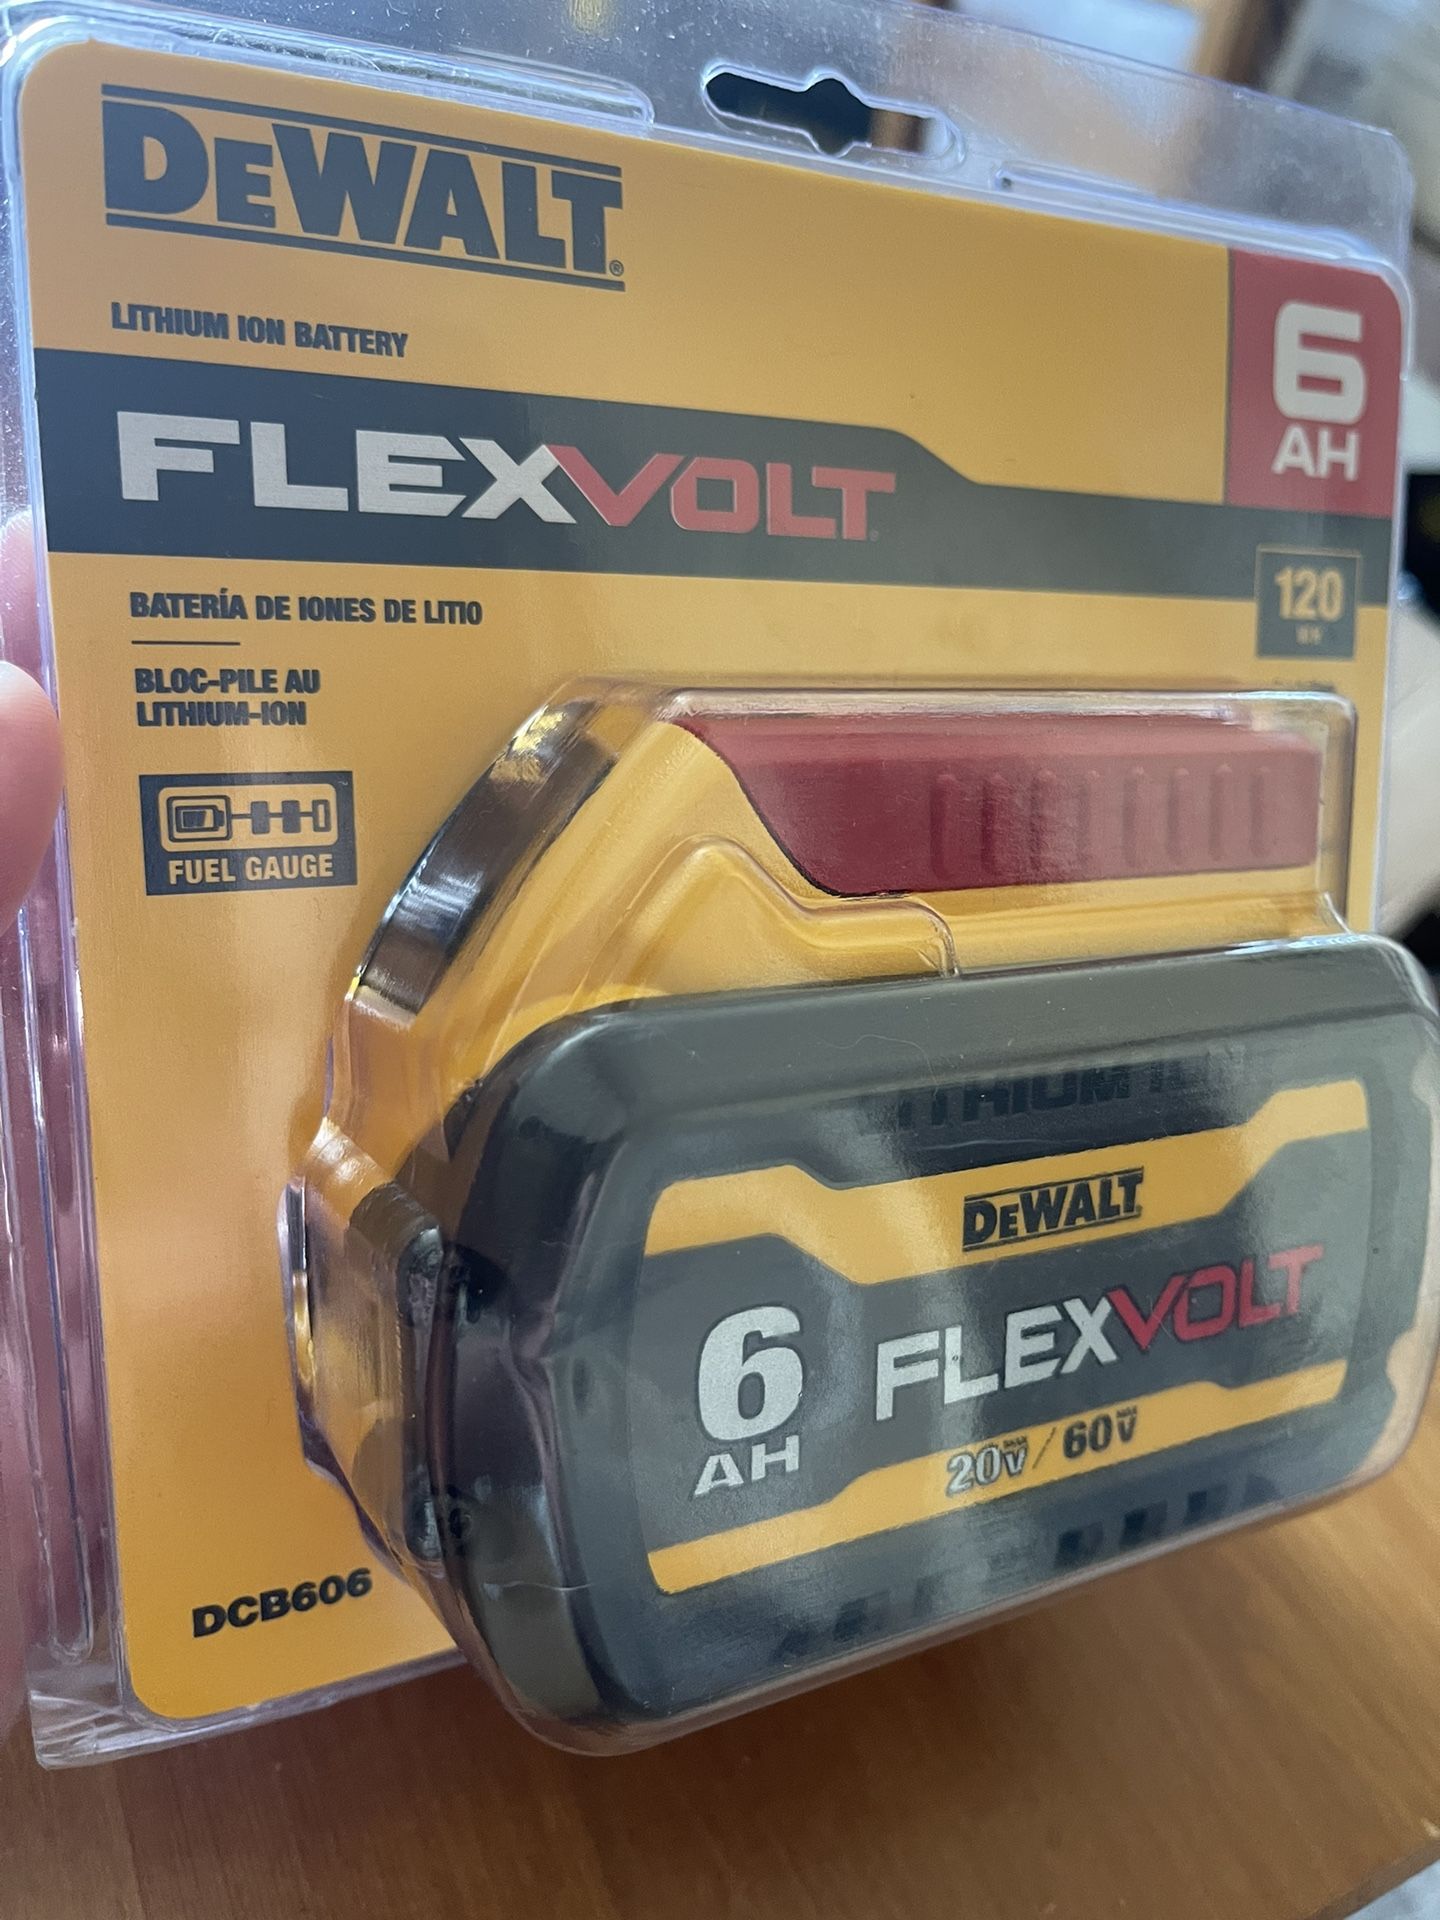 DEWALT FLEXVOLT 6AH battery - NEW (DCB606) 